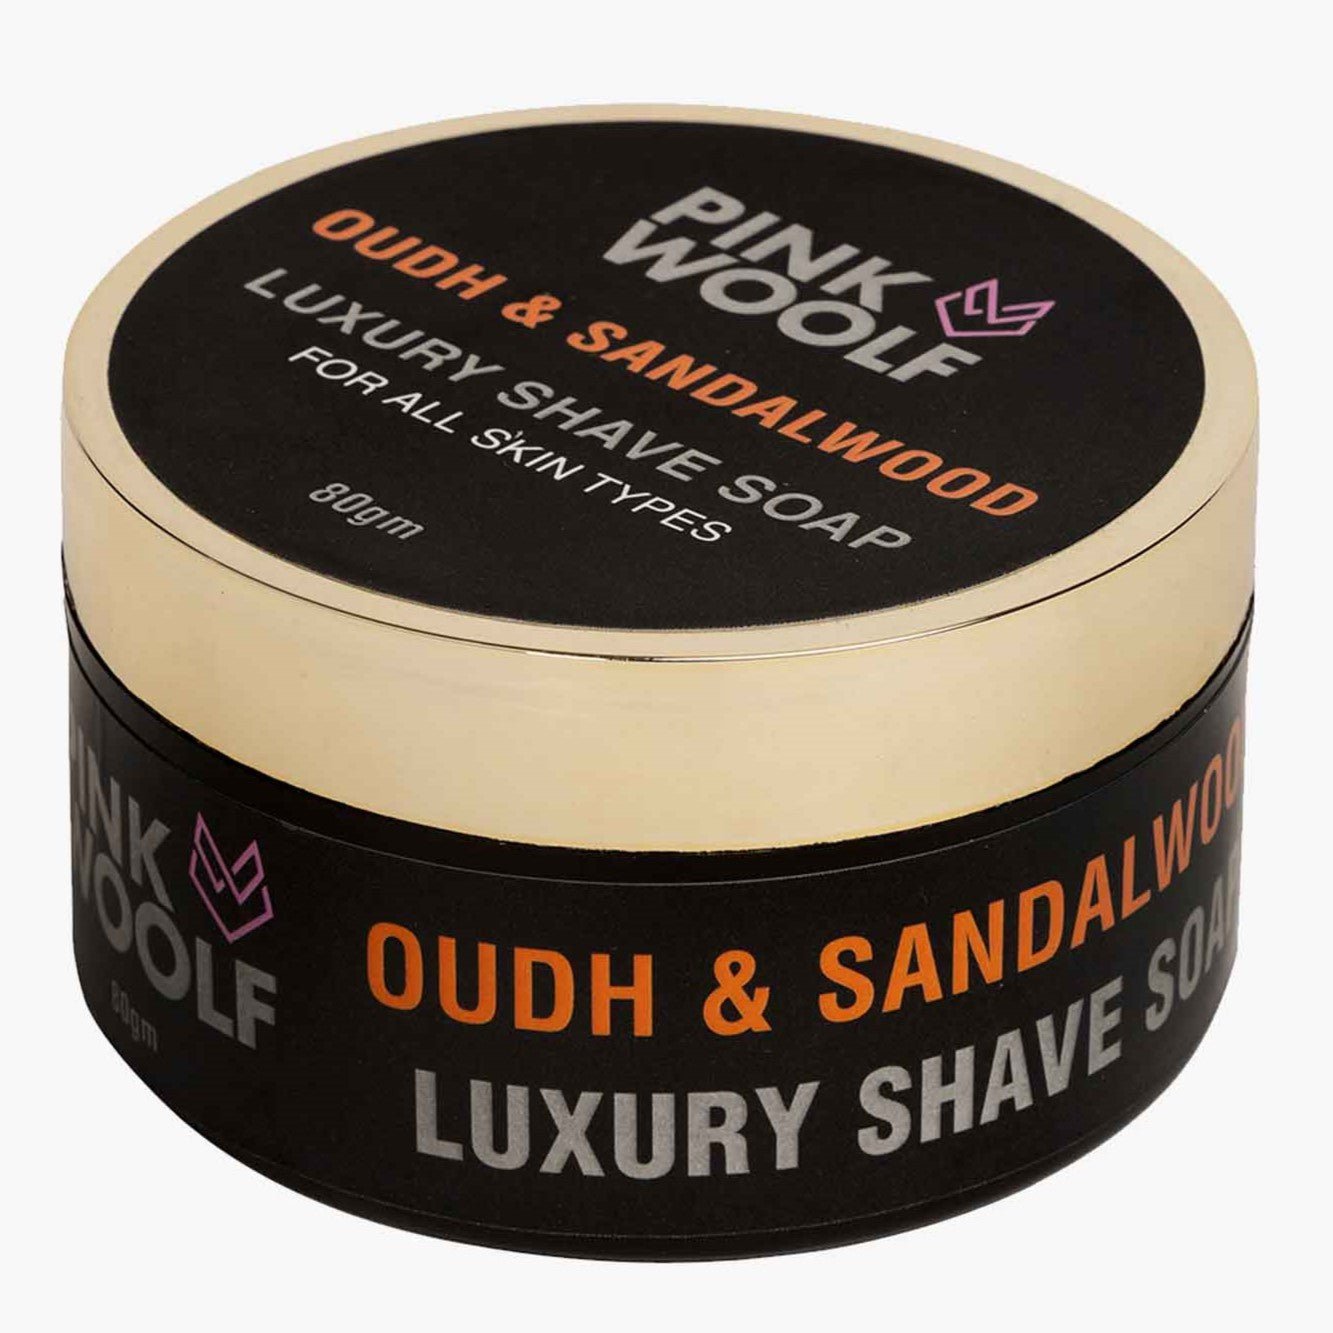 Shaving Soap - OUDH & SANDALWOOD 80 gm - Shaving SoapsPinkWoolf